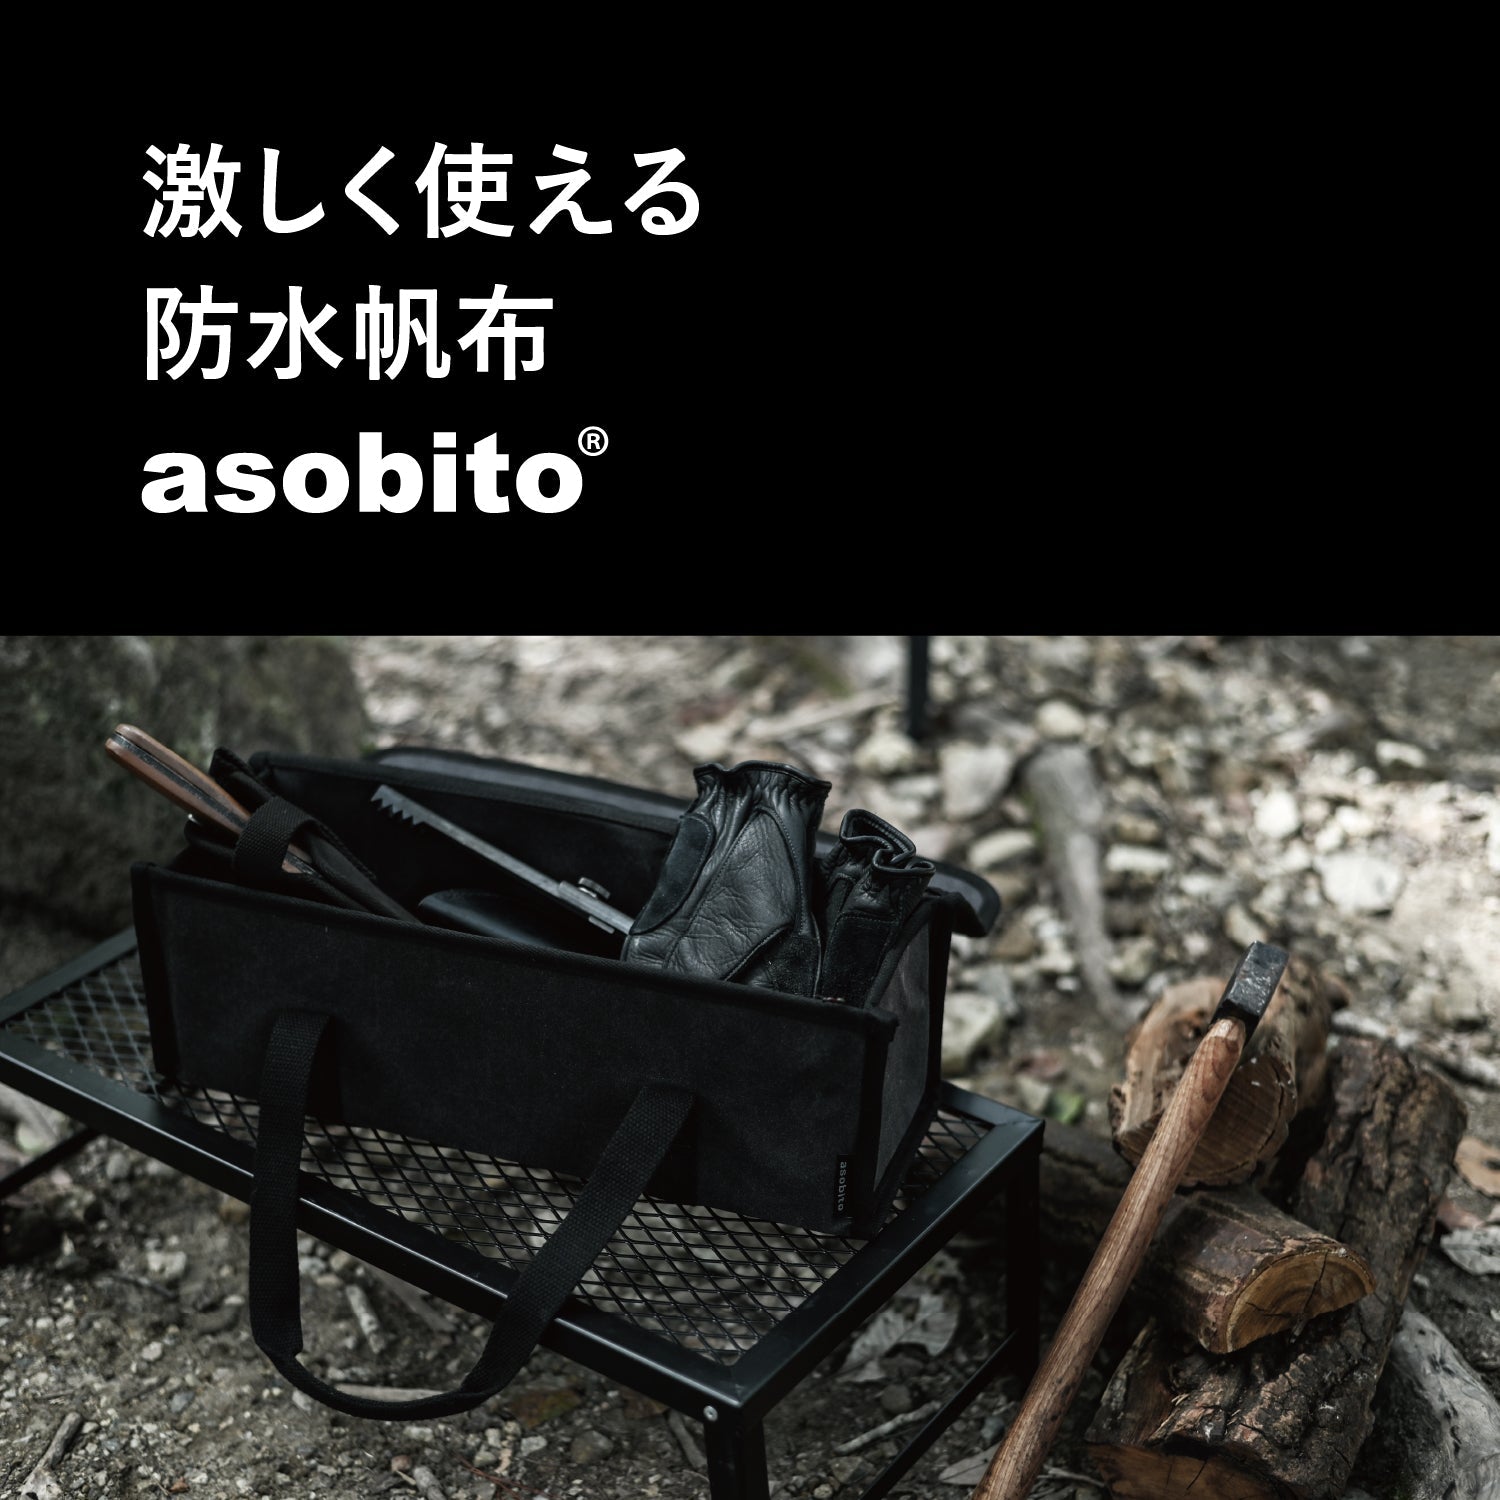 【ビッグウイングオンライン限定】 asobito(アソビト) ツールボックスM チャコール - ビッグウイングオンラインストア